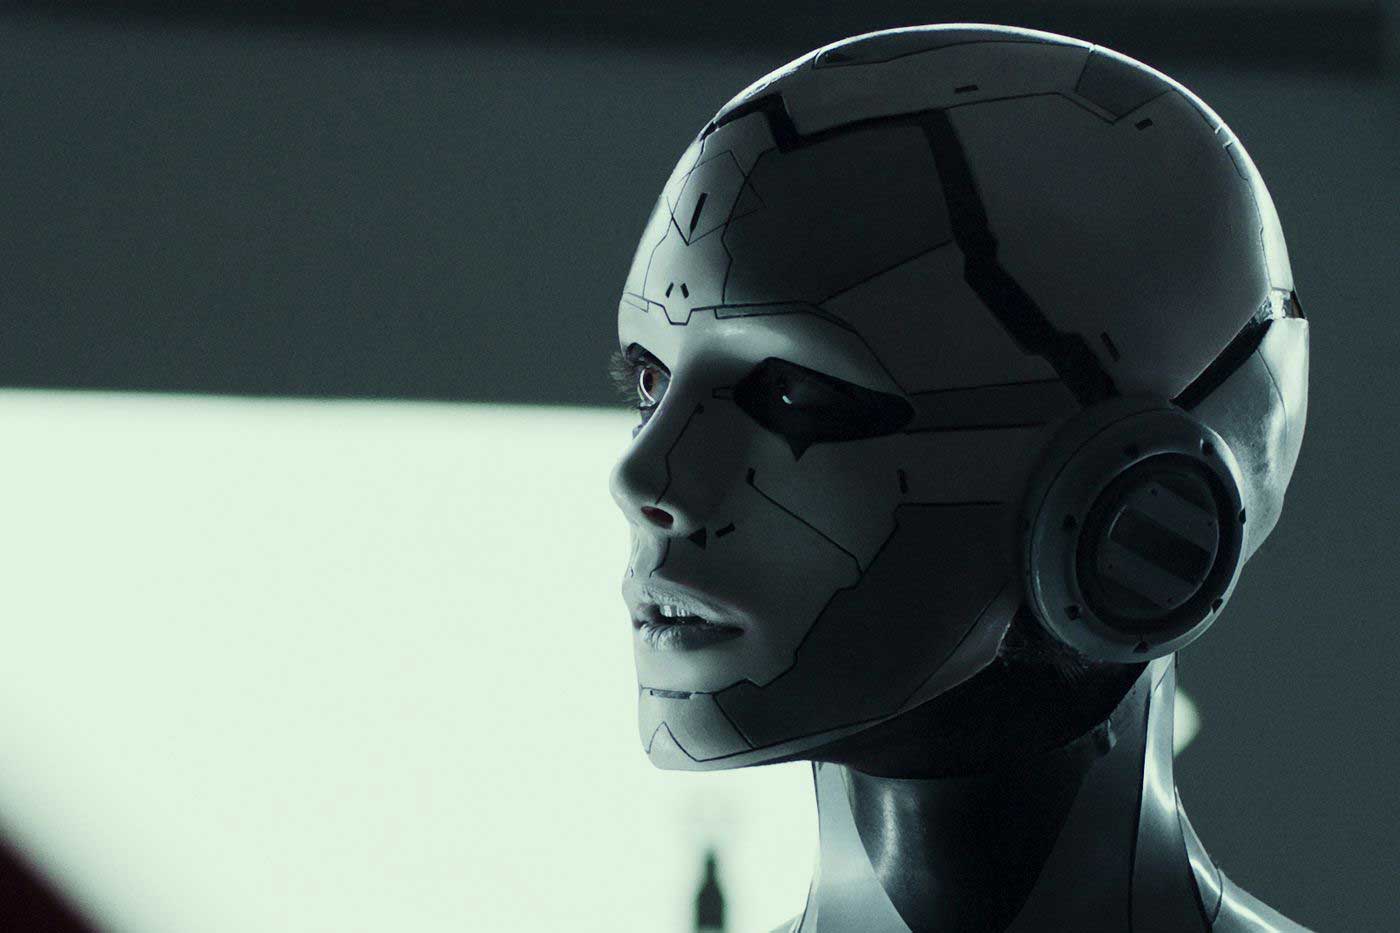 چهره بهت زده و فلزی ربات در فیلم علمی تخیلی بریتانیایی Archive/بایگانی